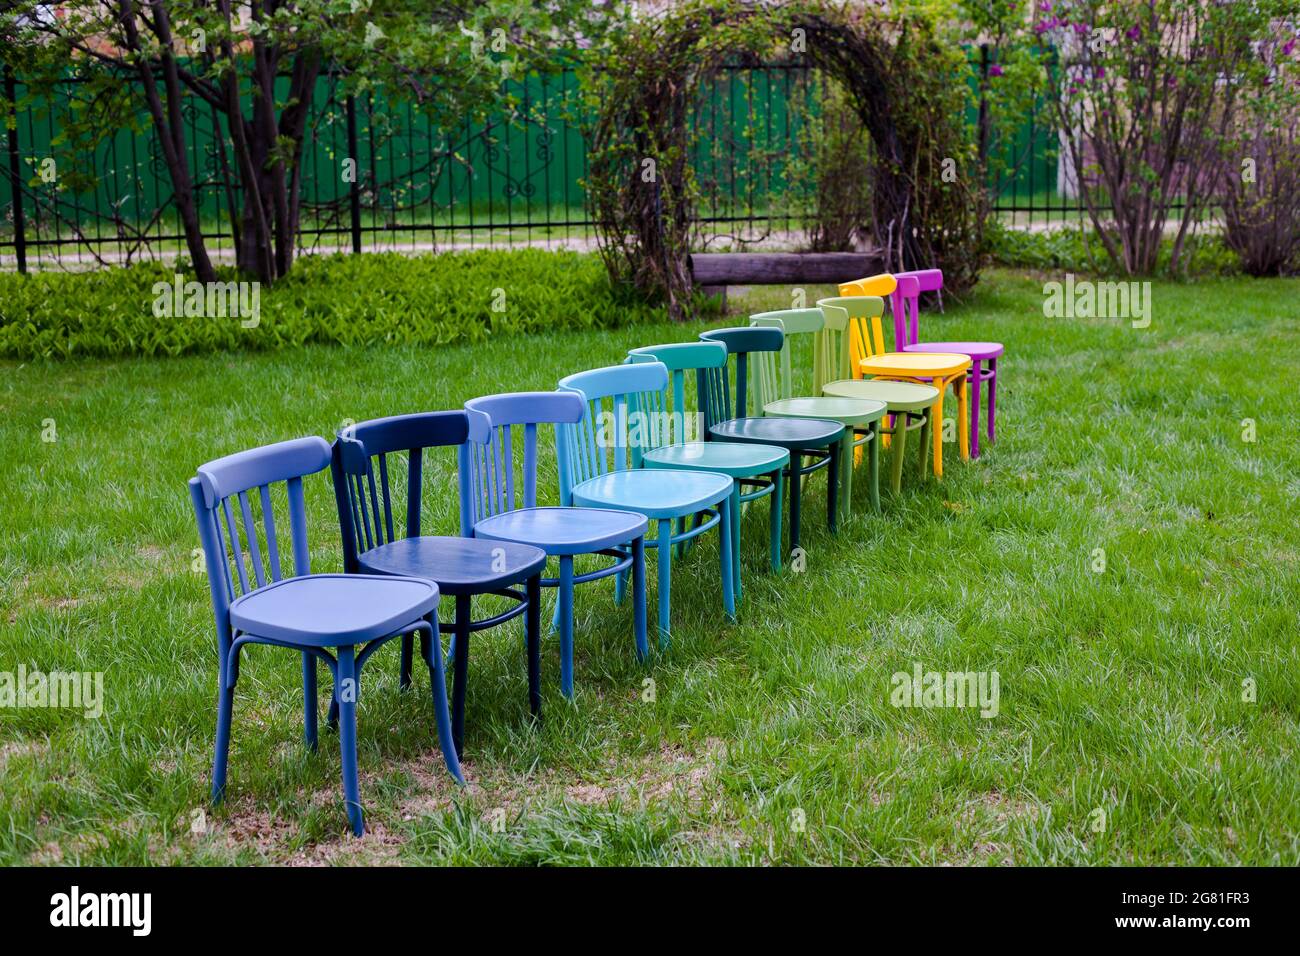 Chaises viennoises en bois repeintes et rénovées, chaises colorées sur la pelouse comme symbole de consommation consciente des choses Banque D'Images